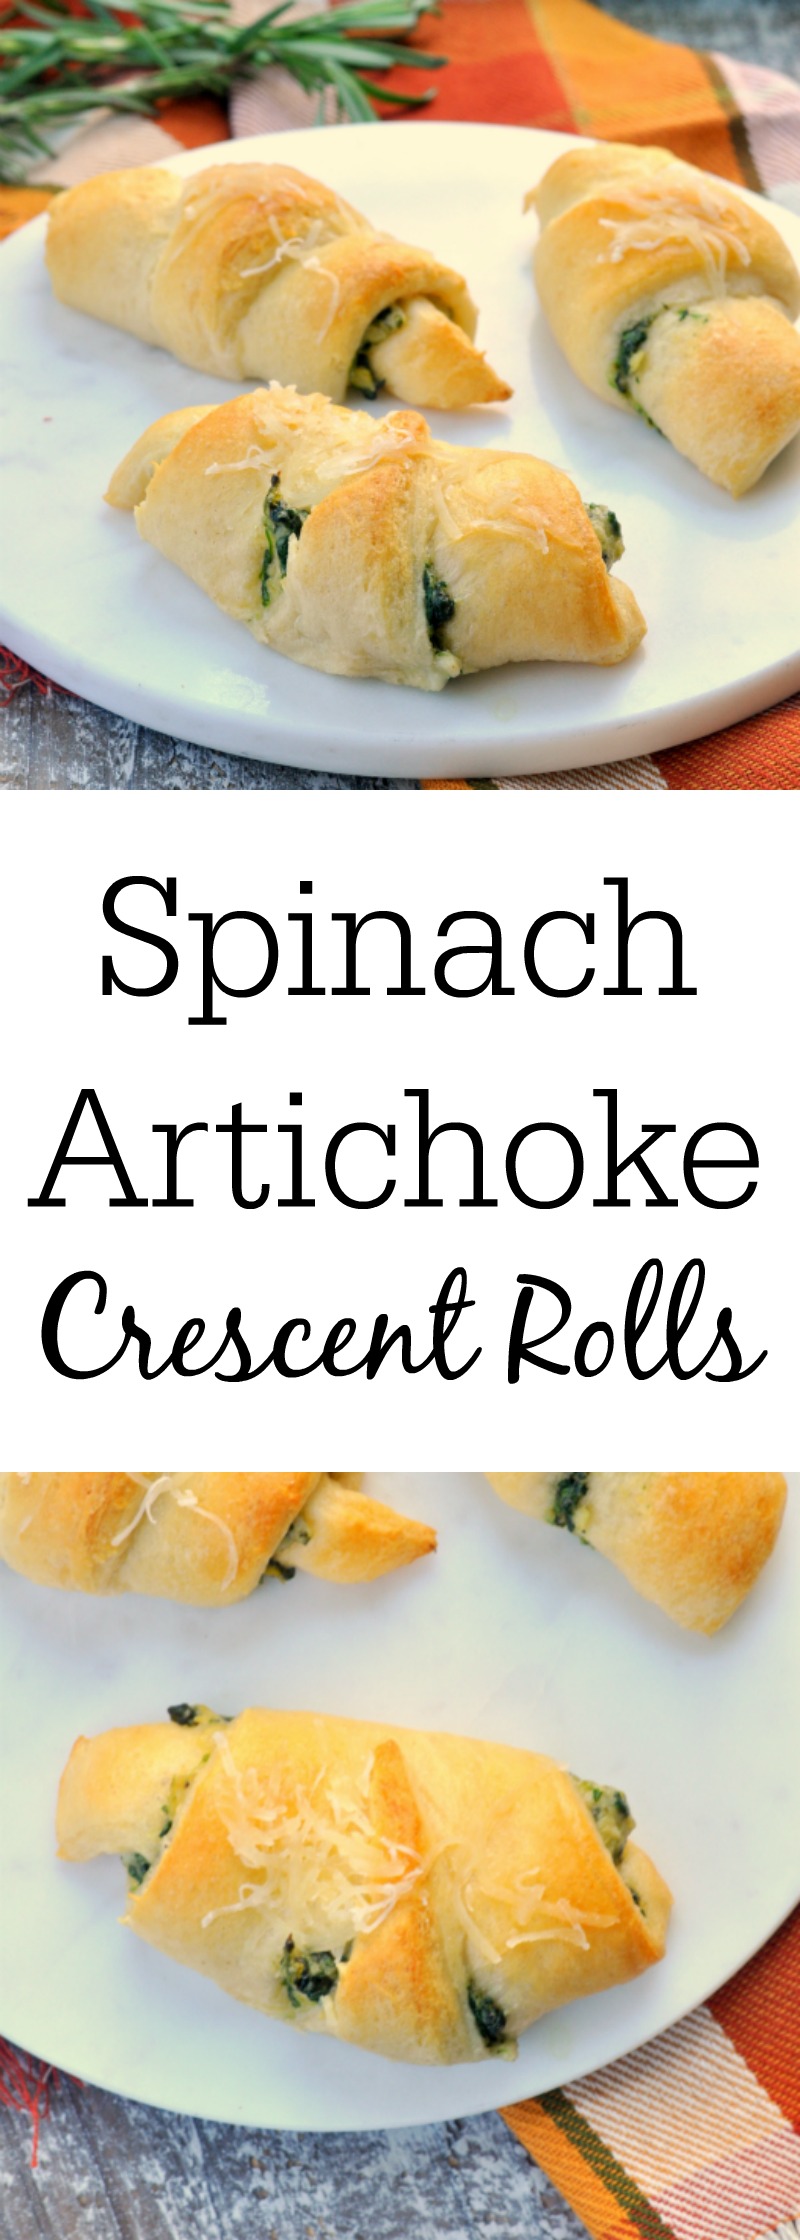 Spinach Artichoke Crescent Rolls